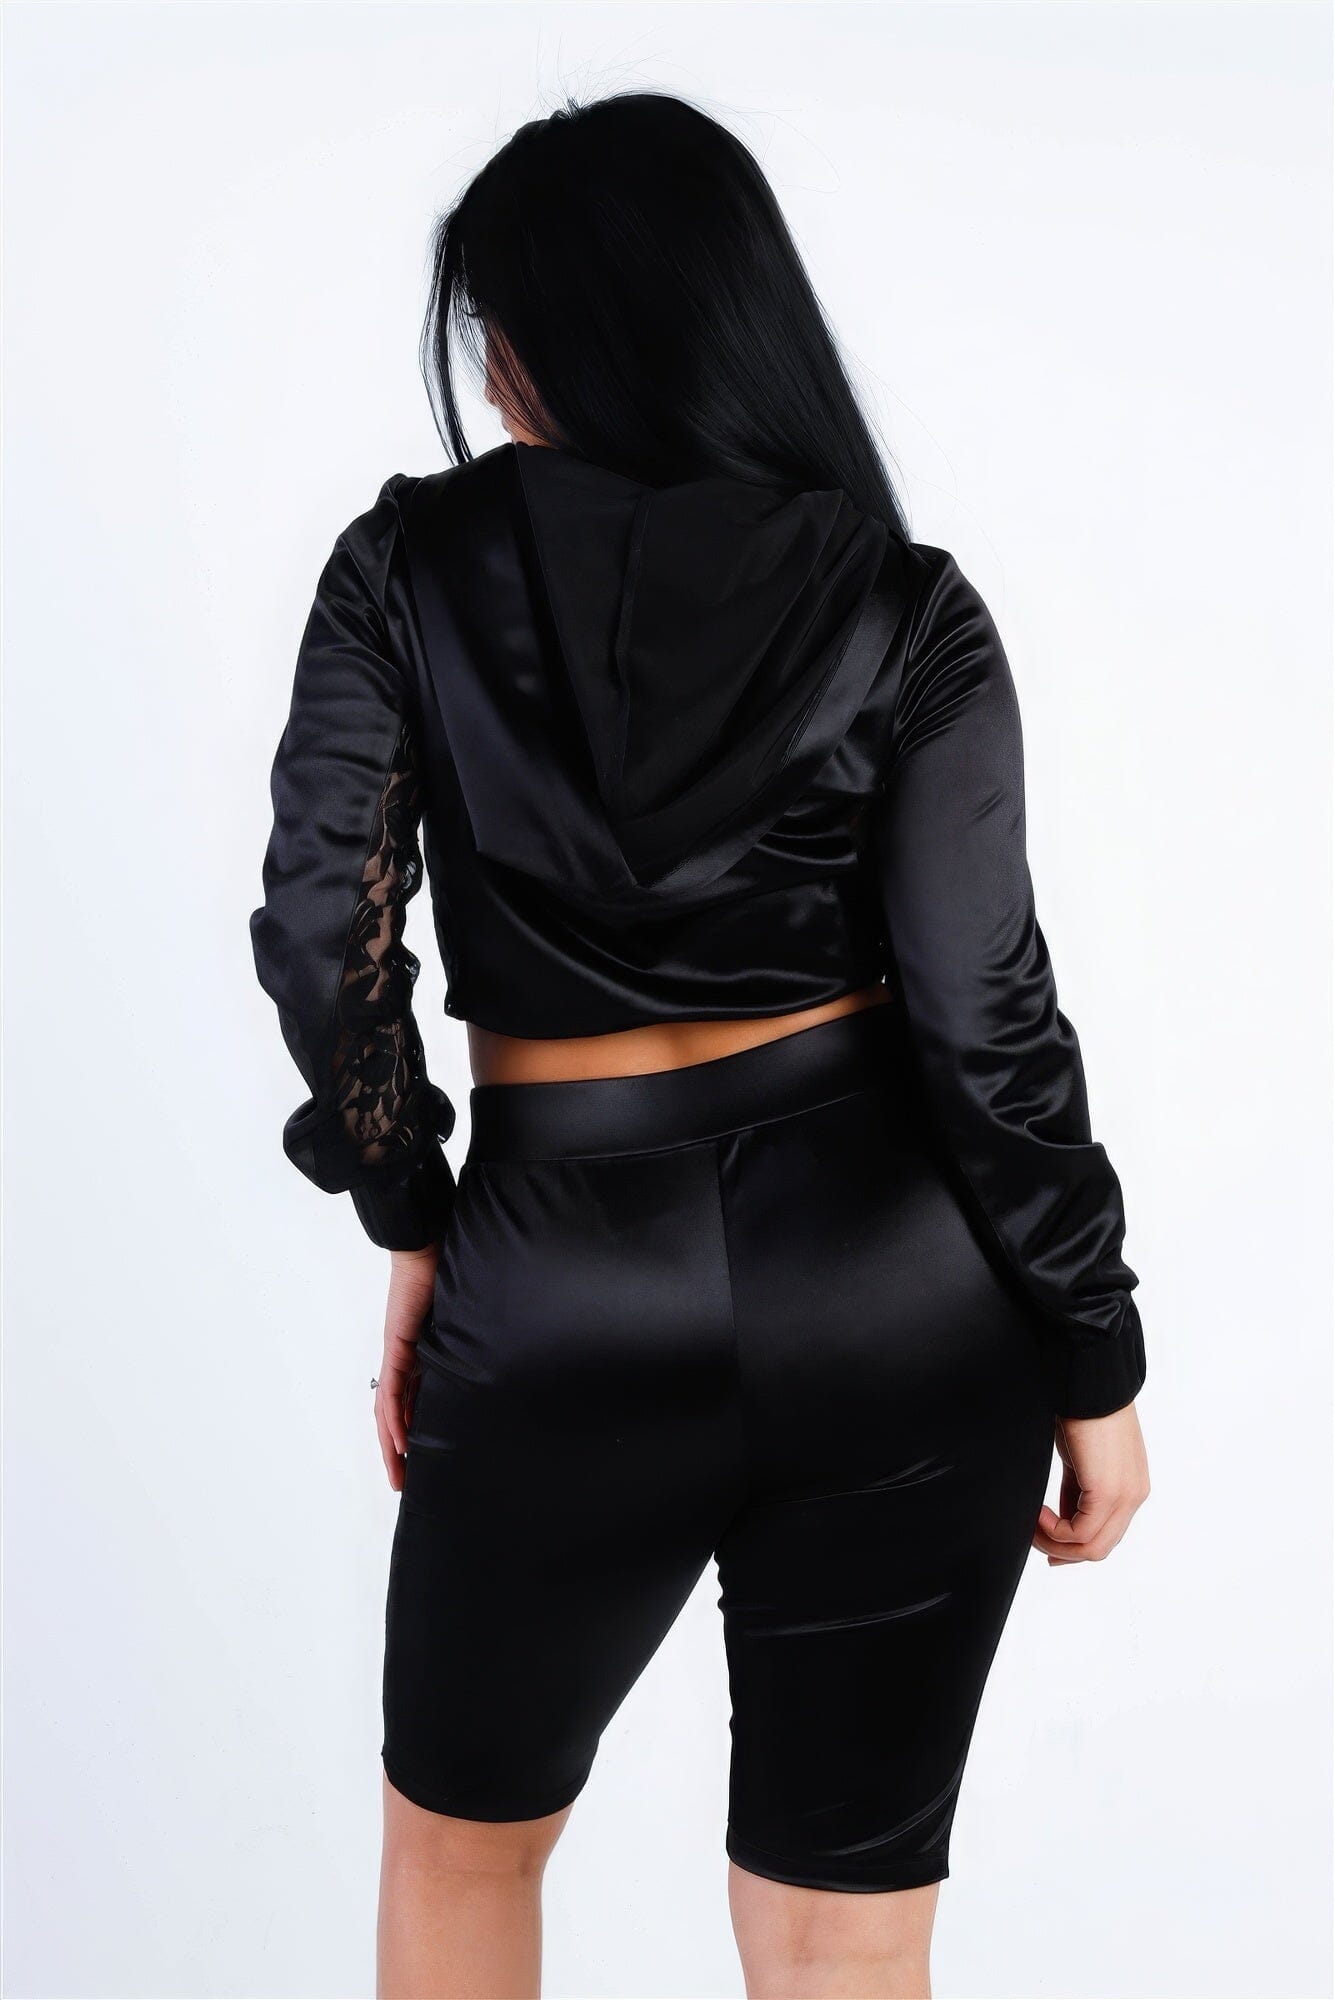 Black Satin Lace Details Long Sleeve Hooded Crop Top & Biker Short Set Outfit Sets jehouze 